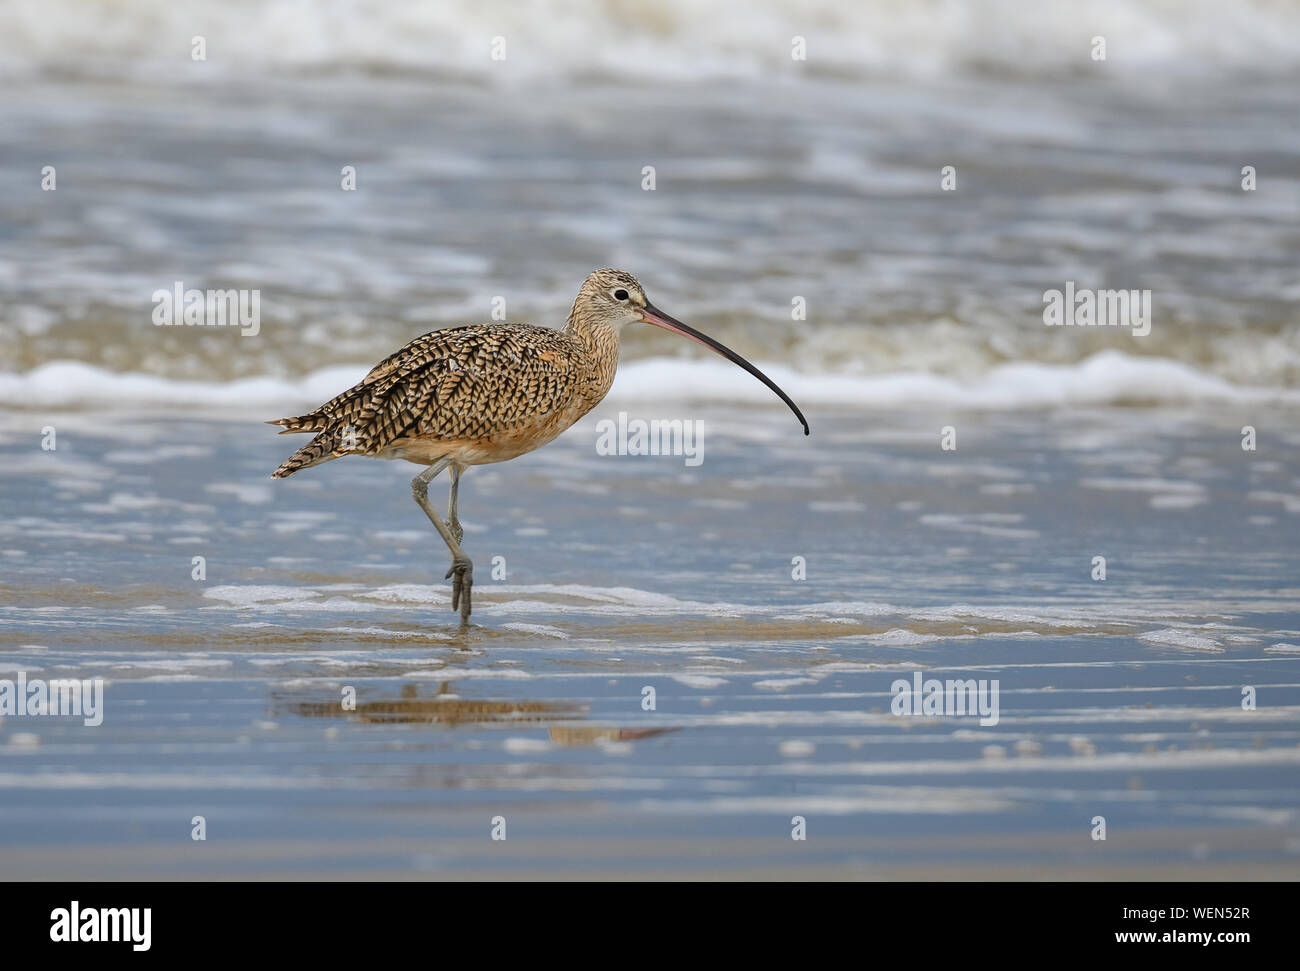 A lungo fatturate (Curlew Numenius americanus) foraggio sulla spiaggia. Galveston, Texas, Stati Uniti d'America. Foto Stock